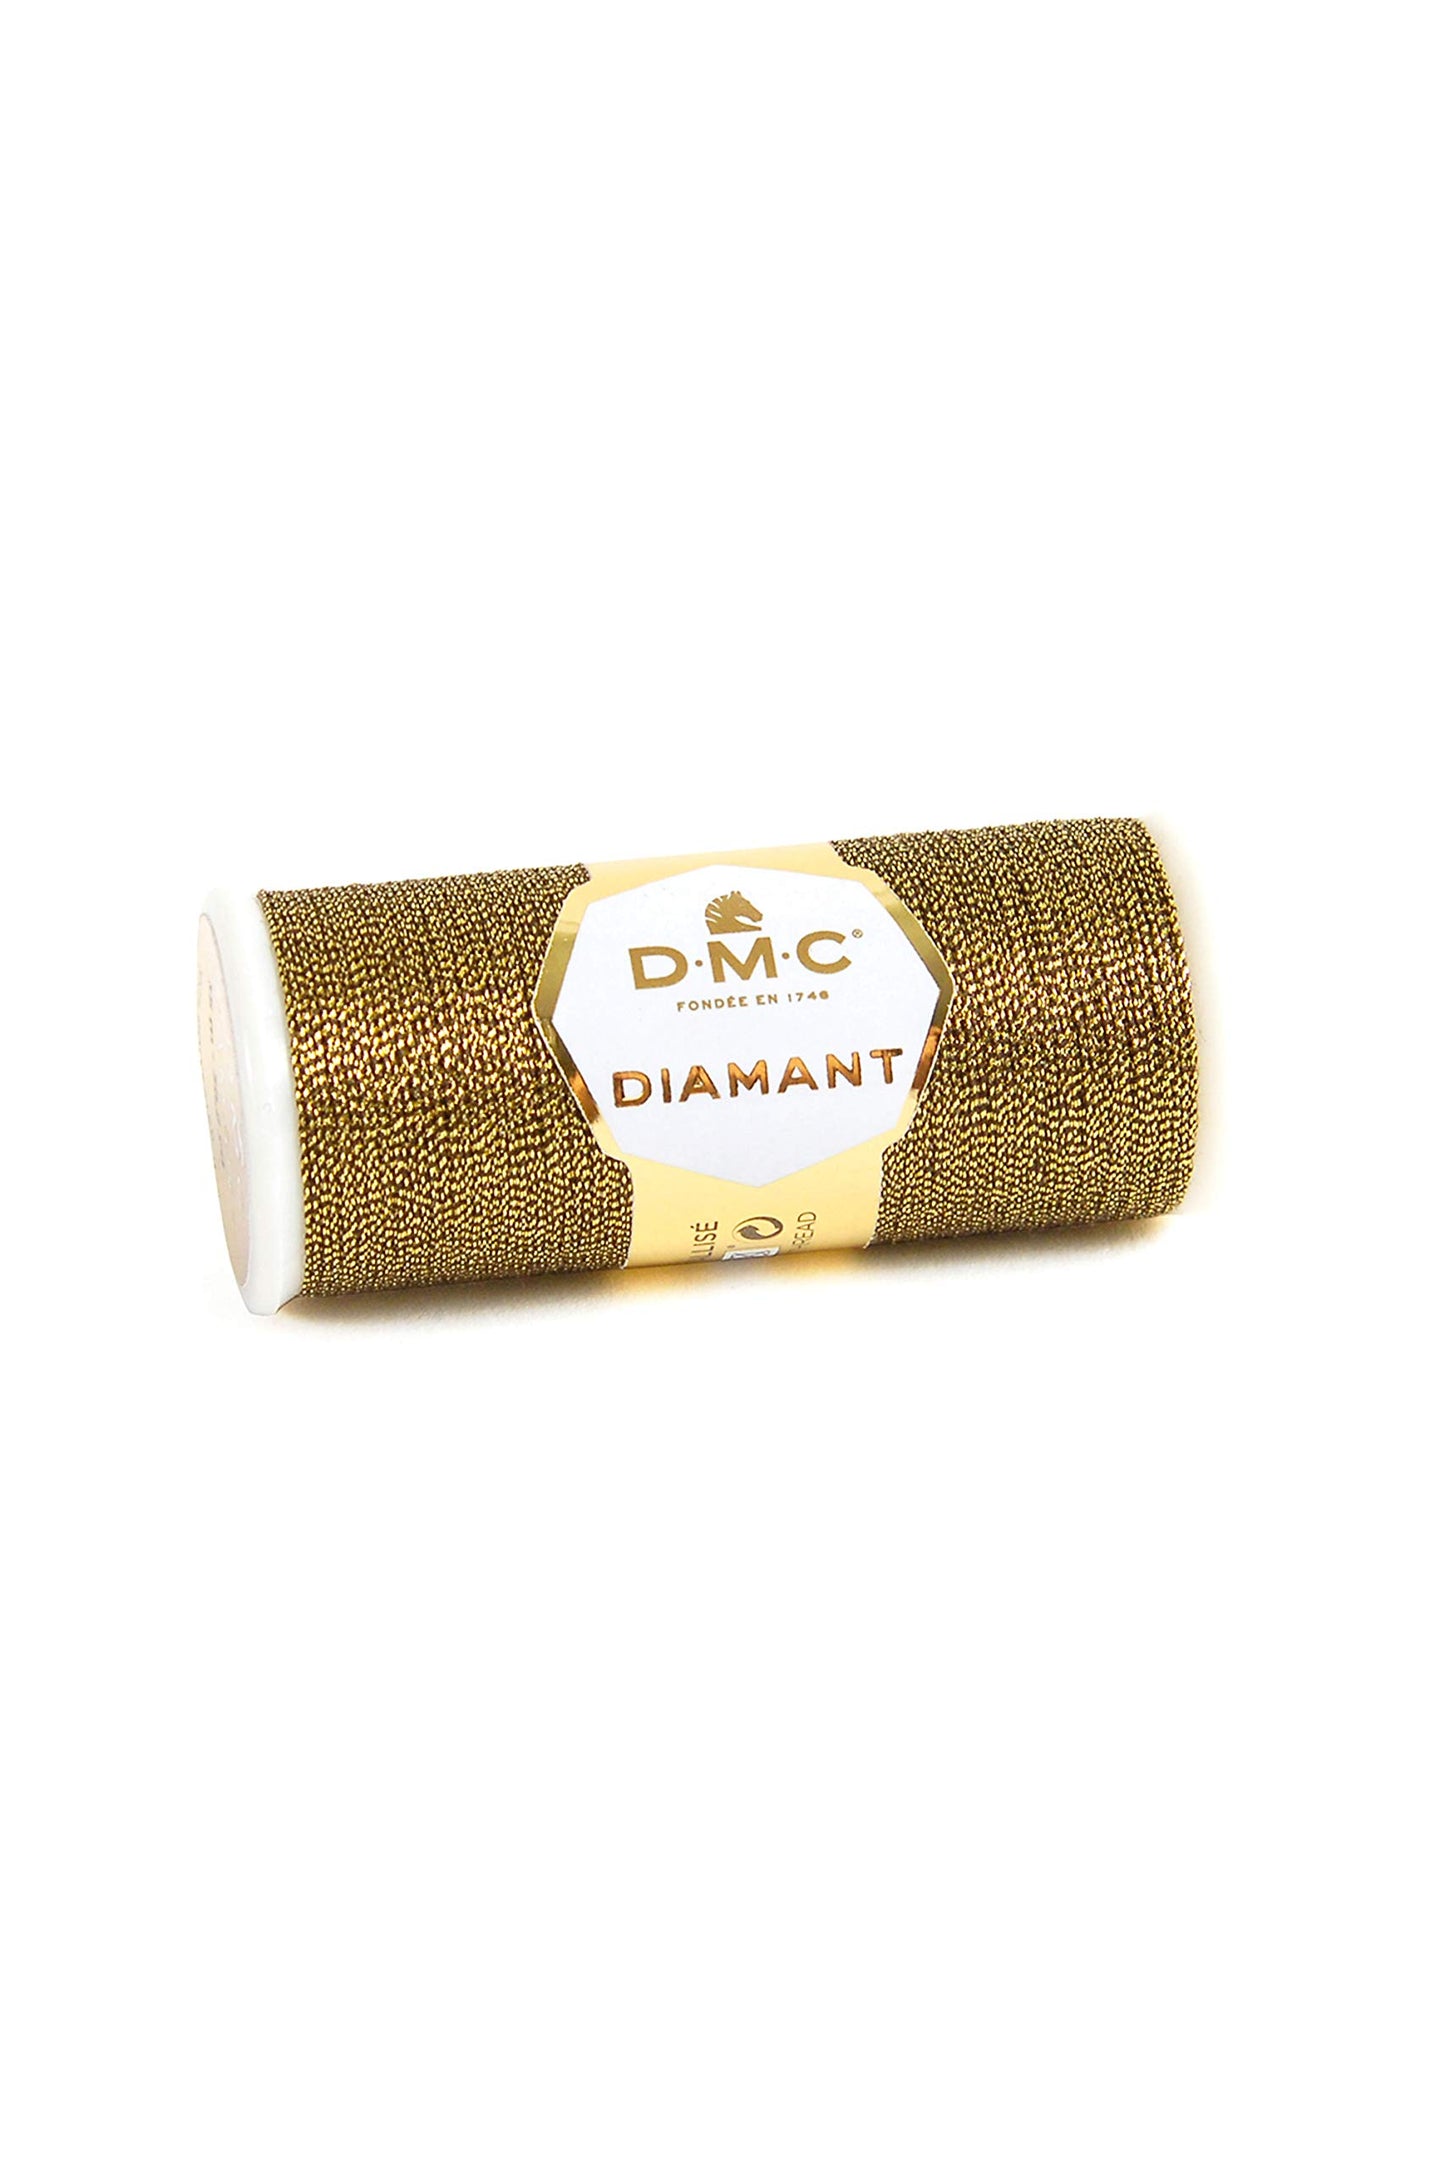 DMC - Diamant